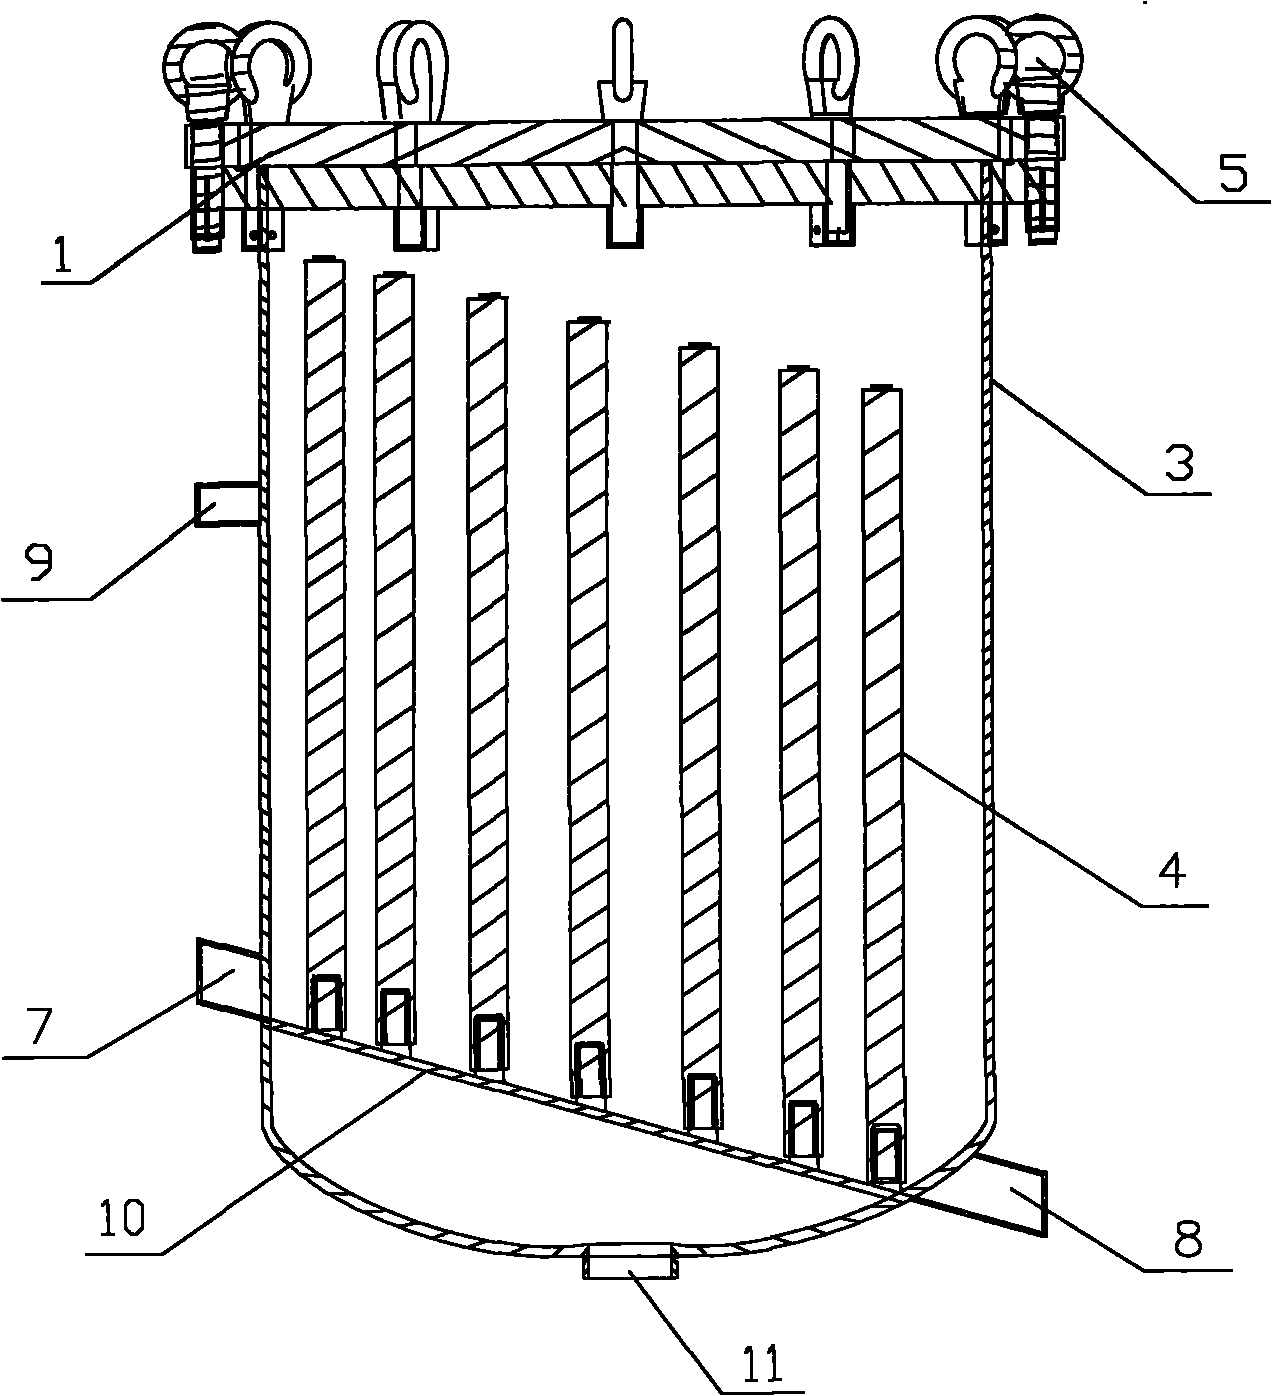 Improved structure of filter vat